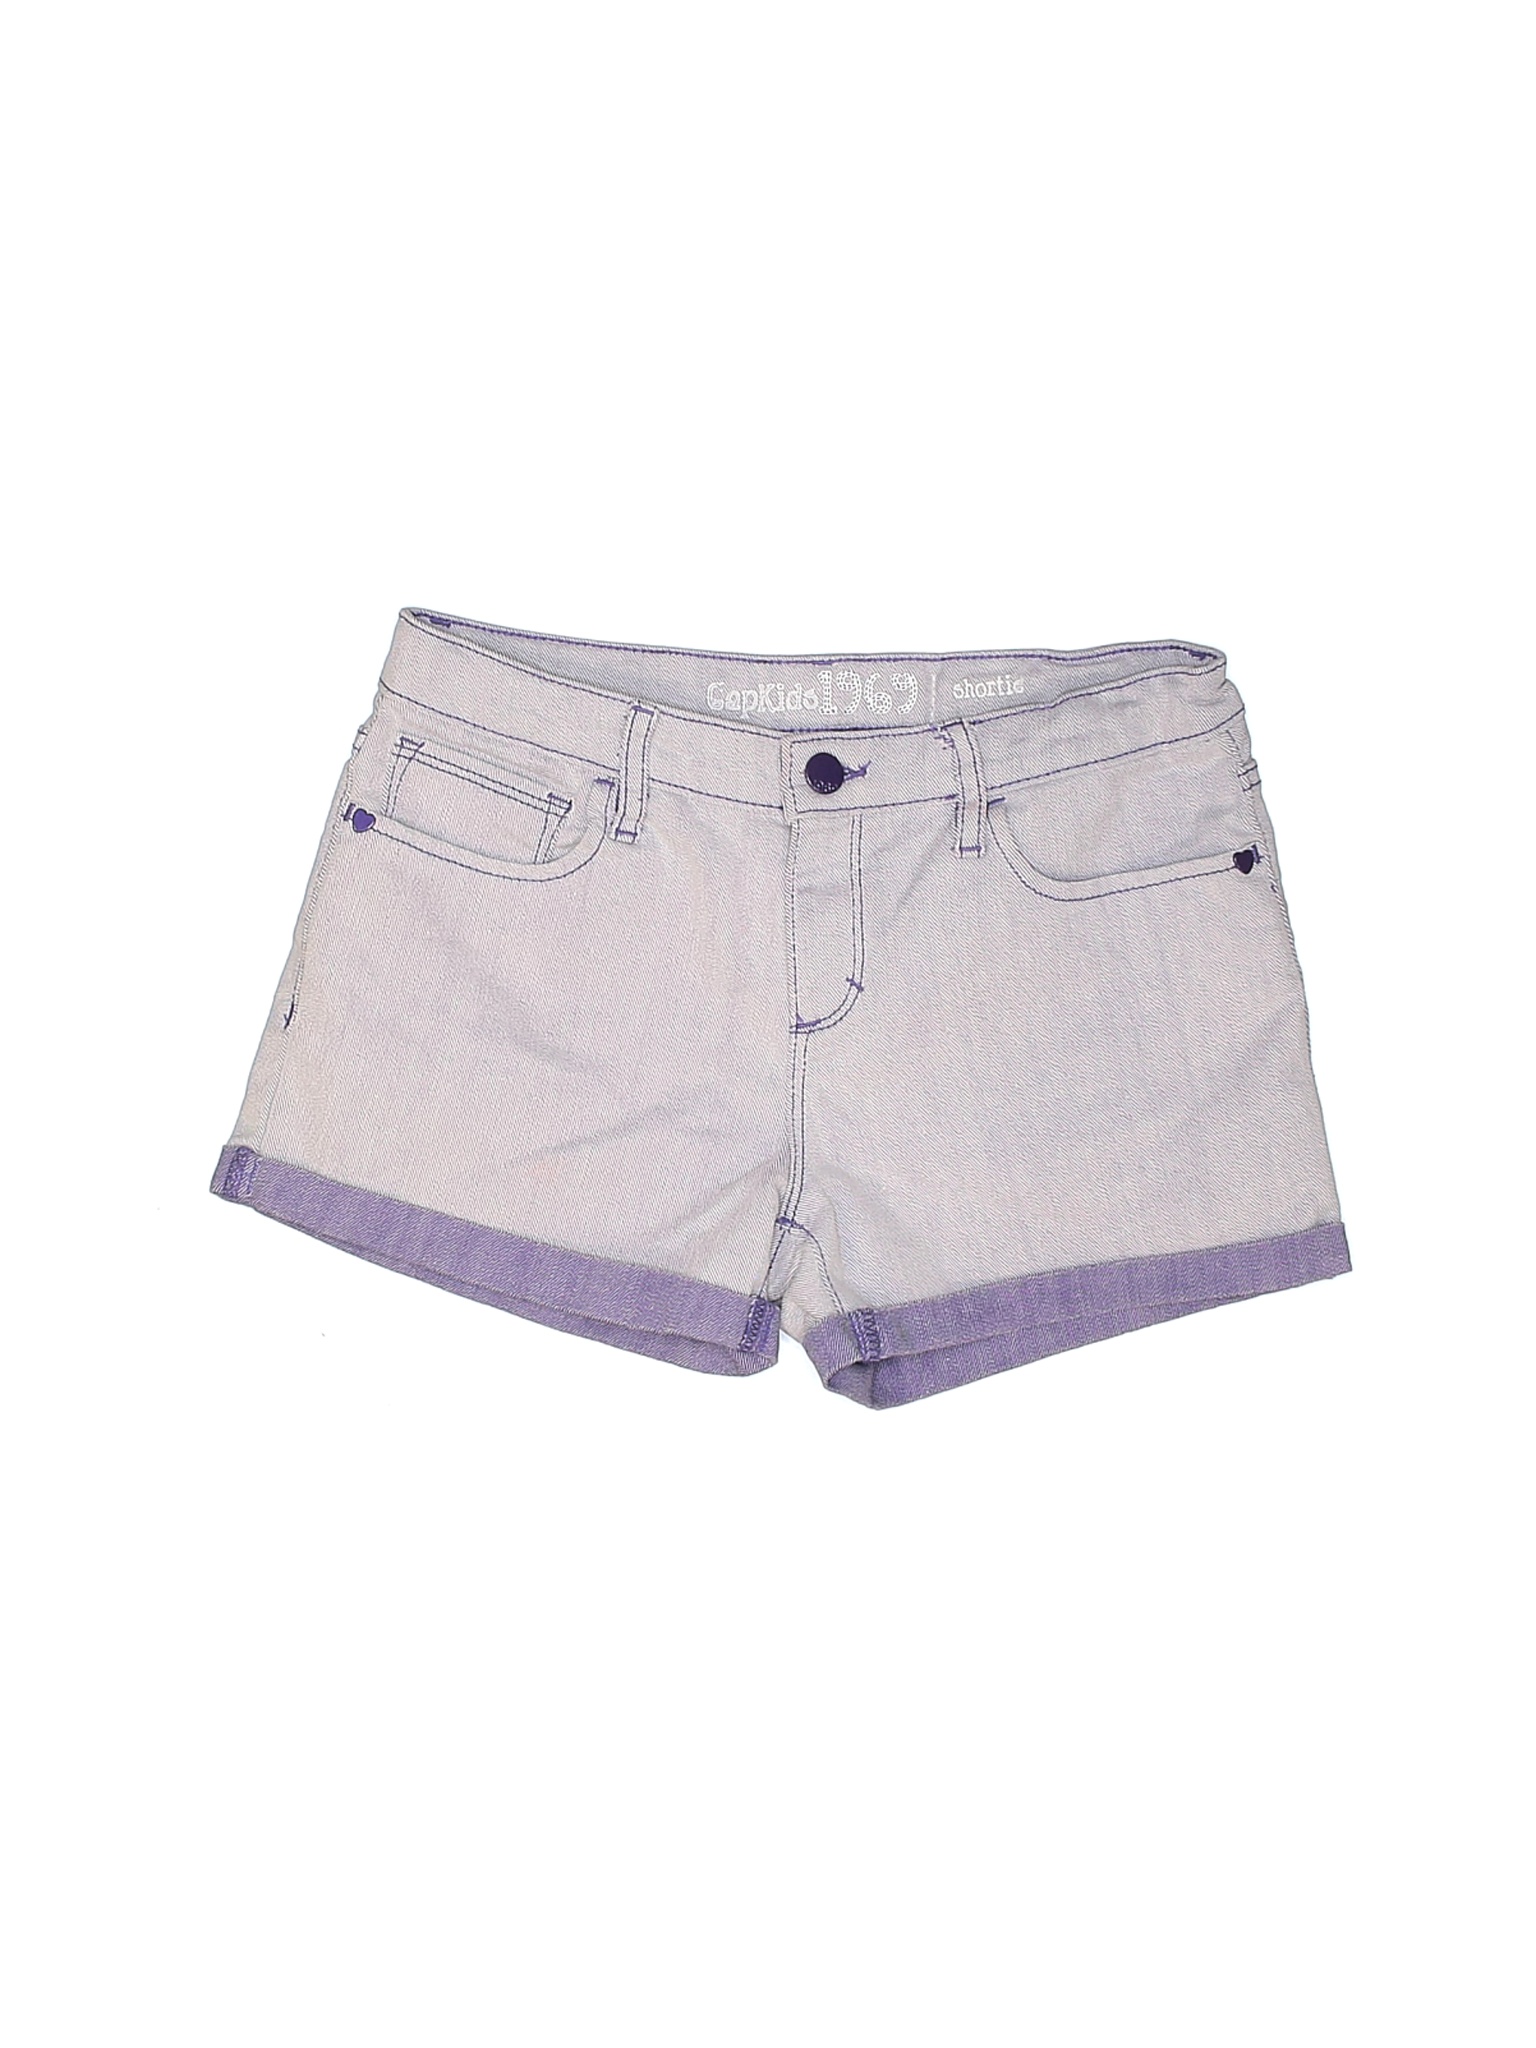 lilac denim shorts